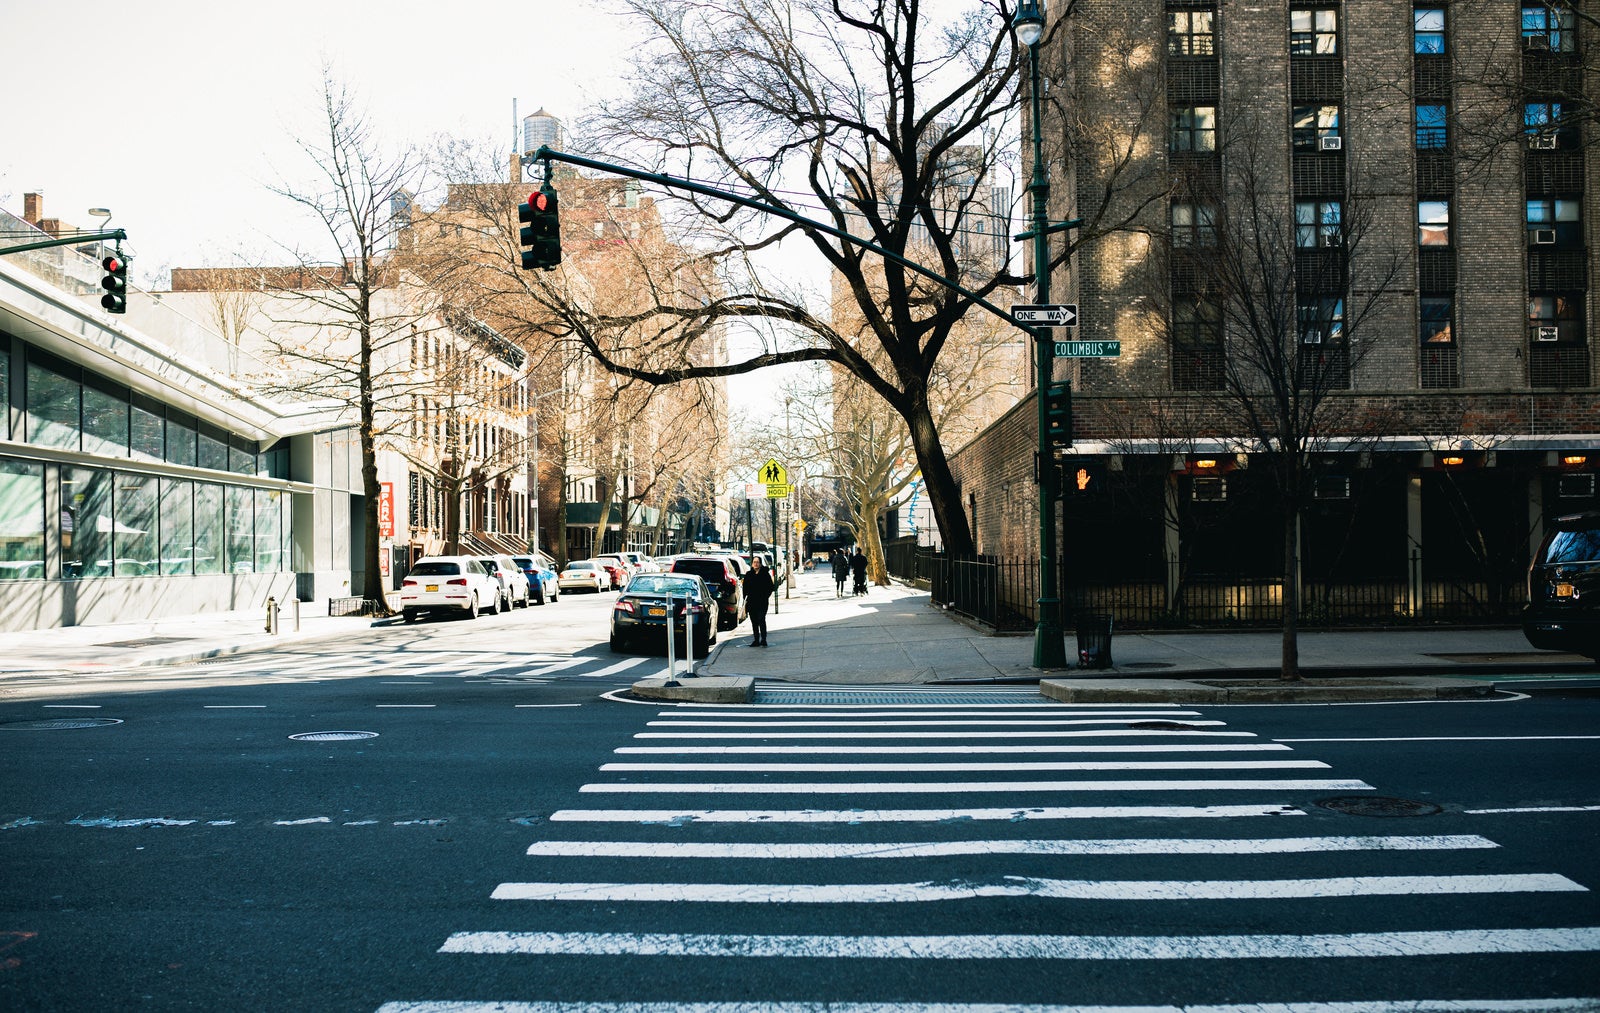 「横断歩道で信号待ちするニューヨーカー」の写真